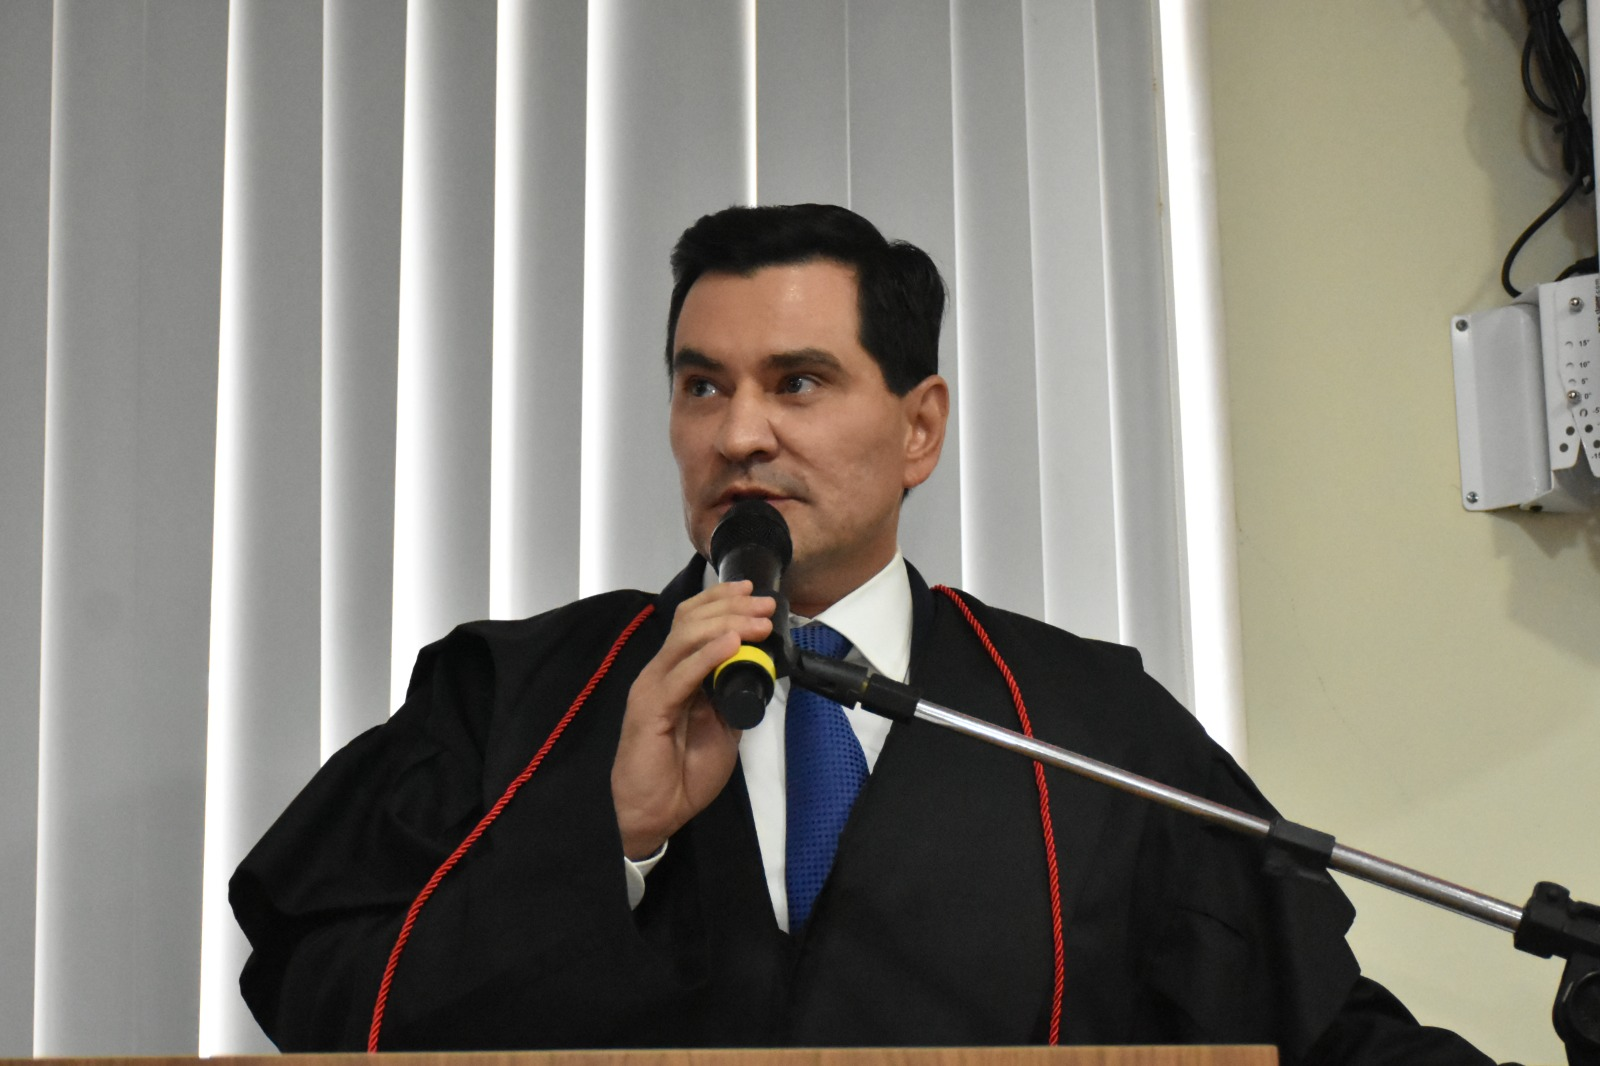 George Soares toma posse como Conselheiro do Tribunal de Contas do Estado